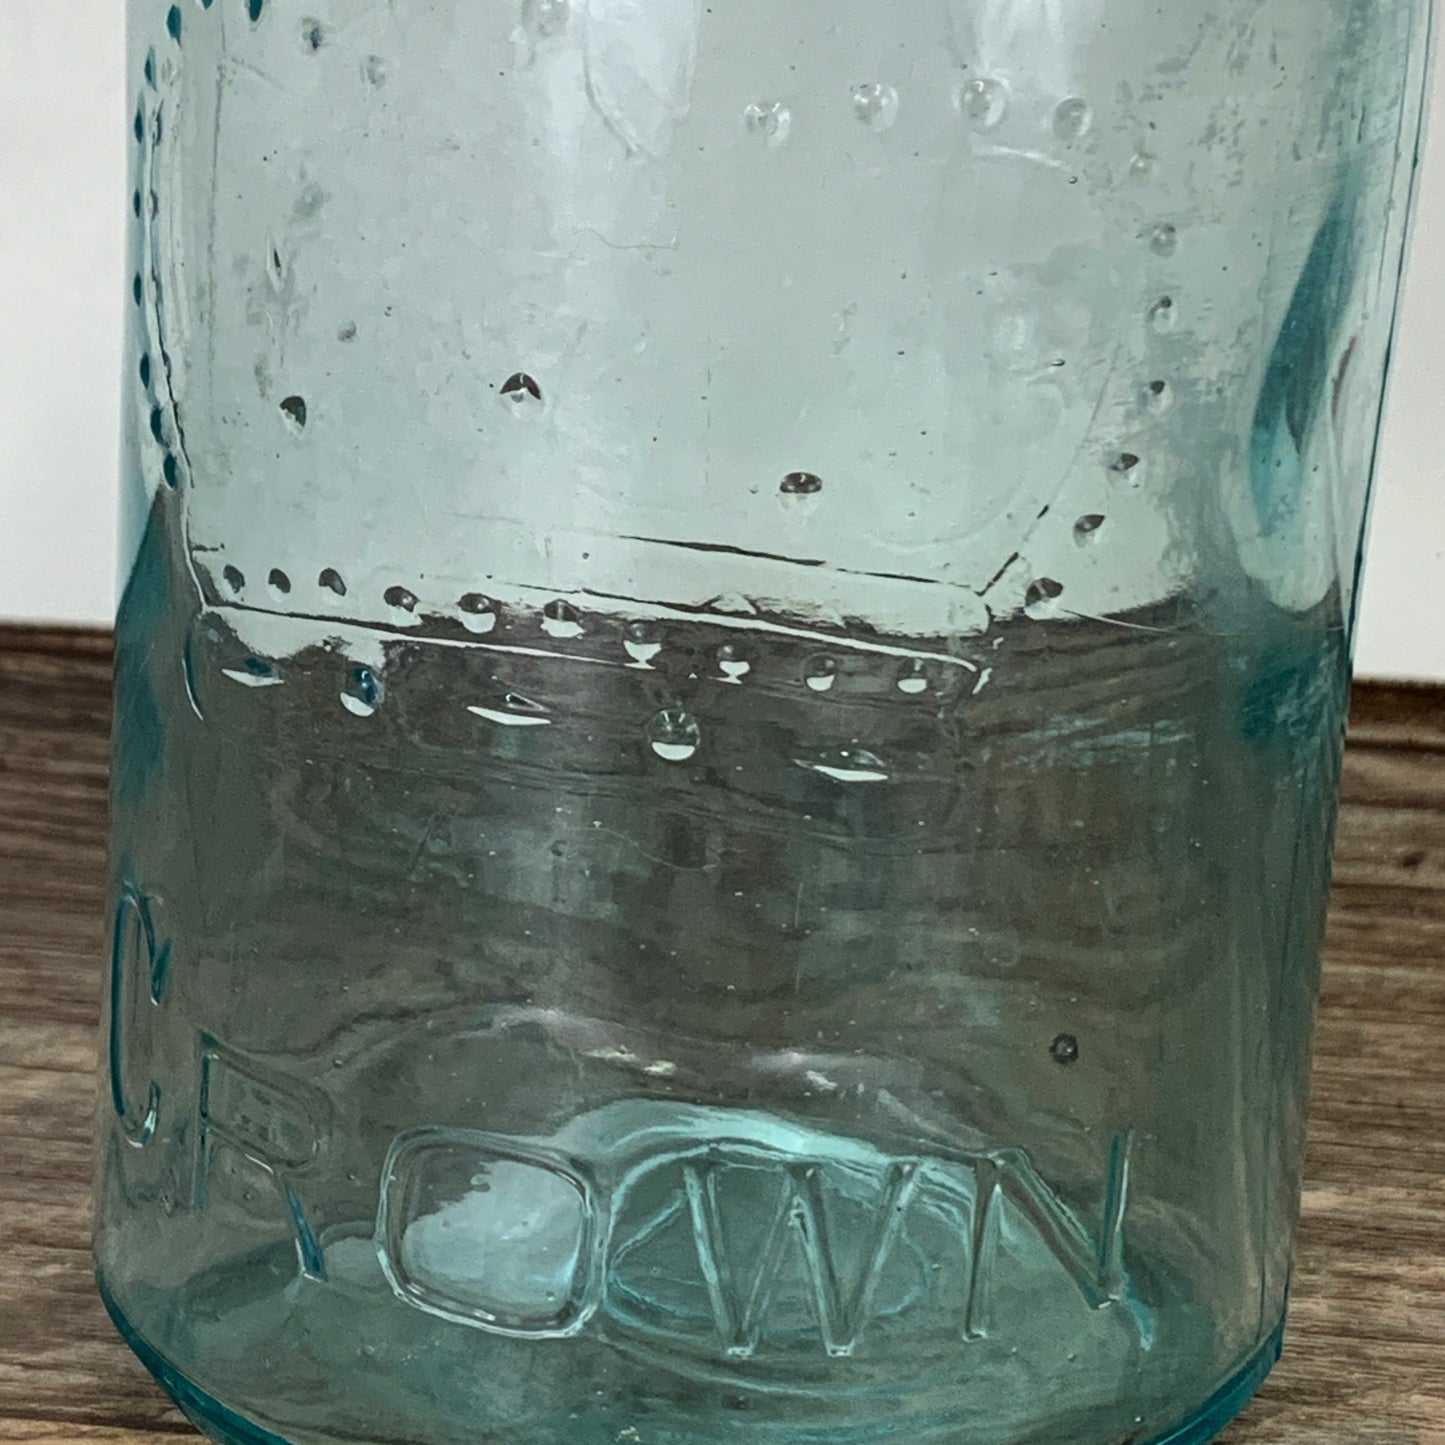 Aqua Crown Quart Size Jar 7" tall with Zinc Ring, Dry Storage, Stash Jar, Pickling Jar